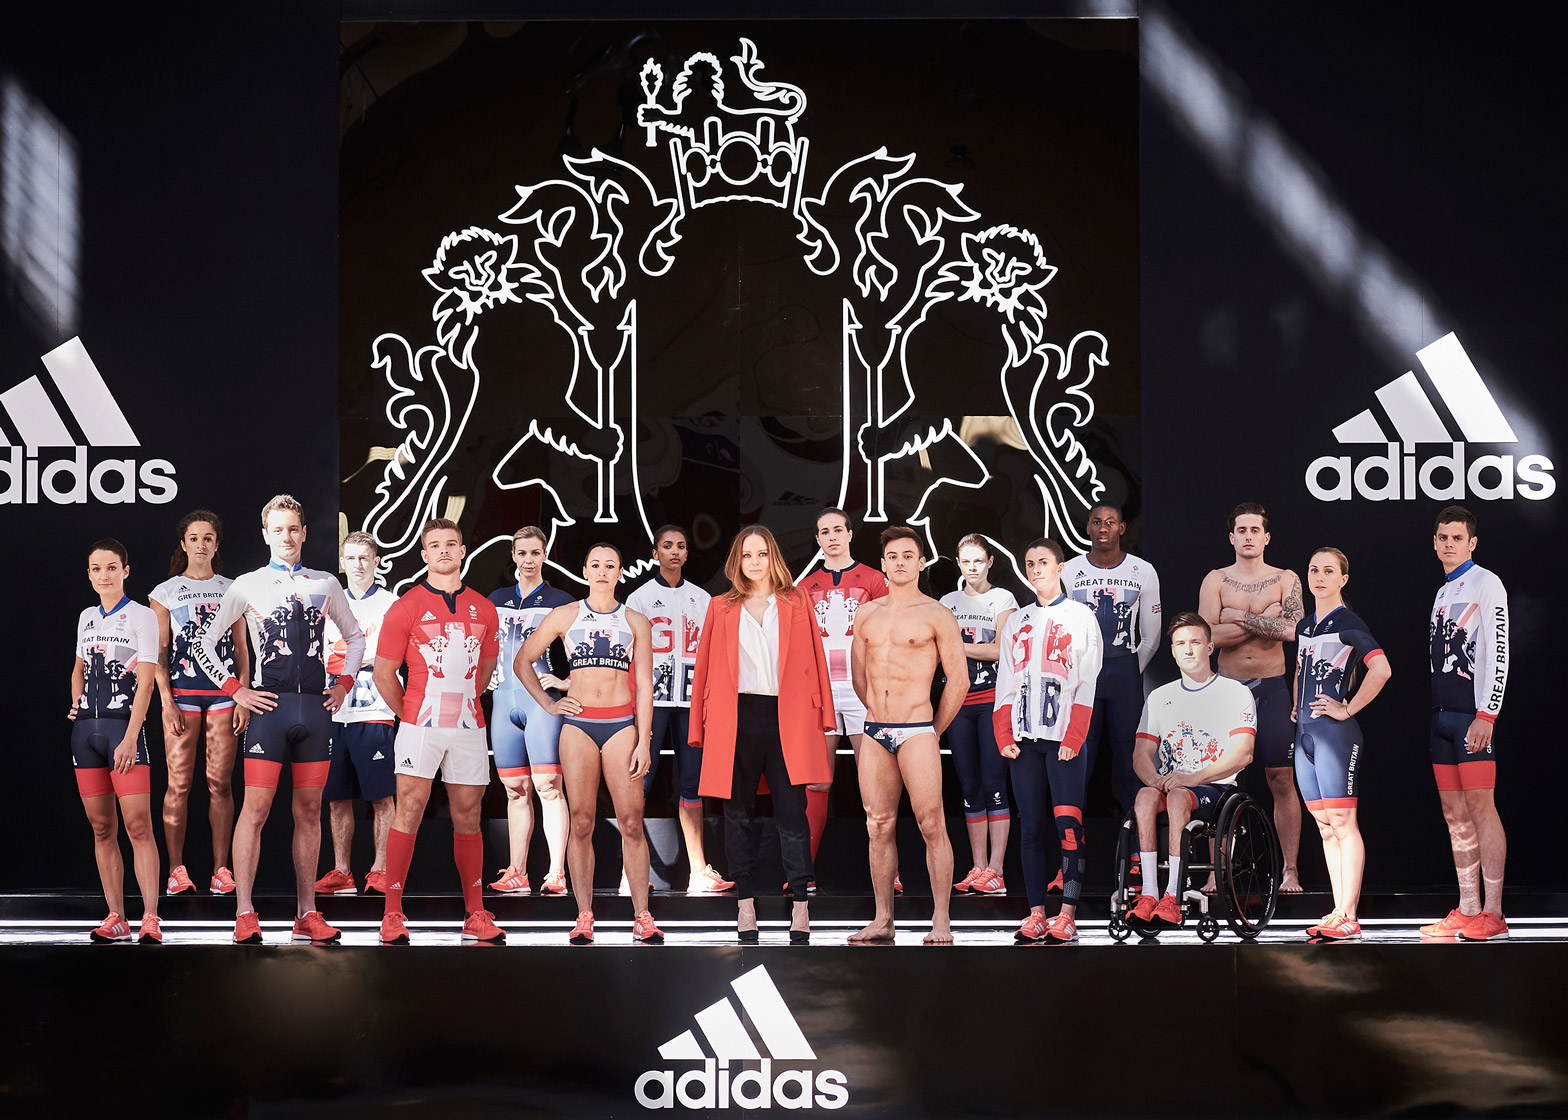 adidas uk olympic kit